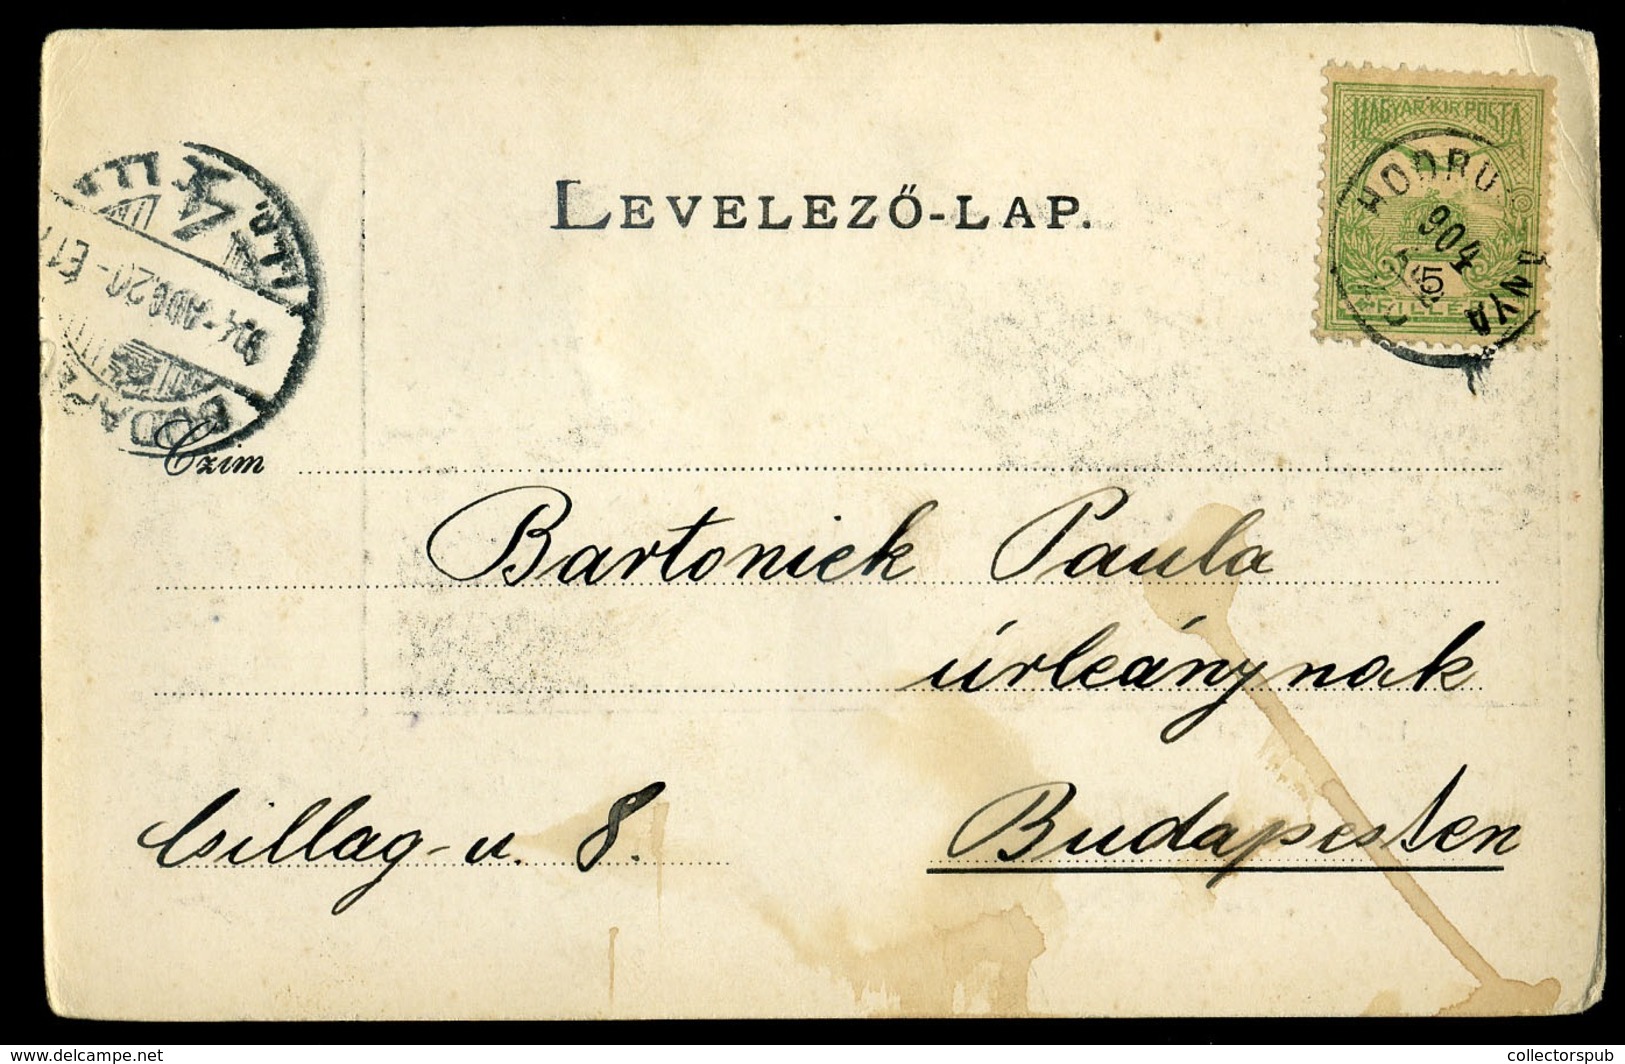 HODRUSBÁNYA 1904. Régi Képeslap - Hungary